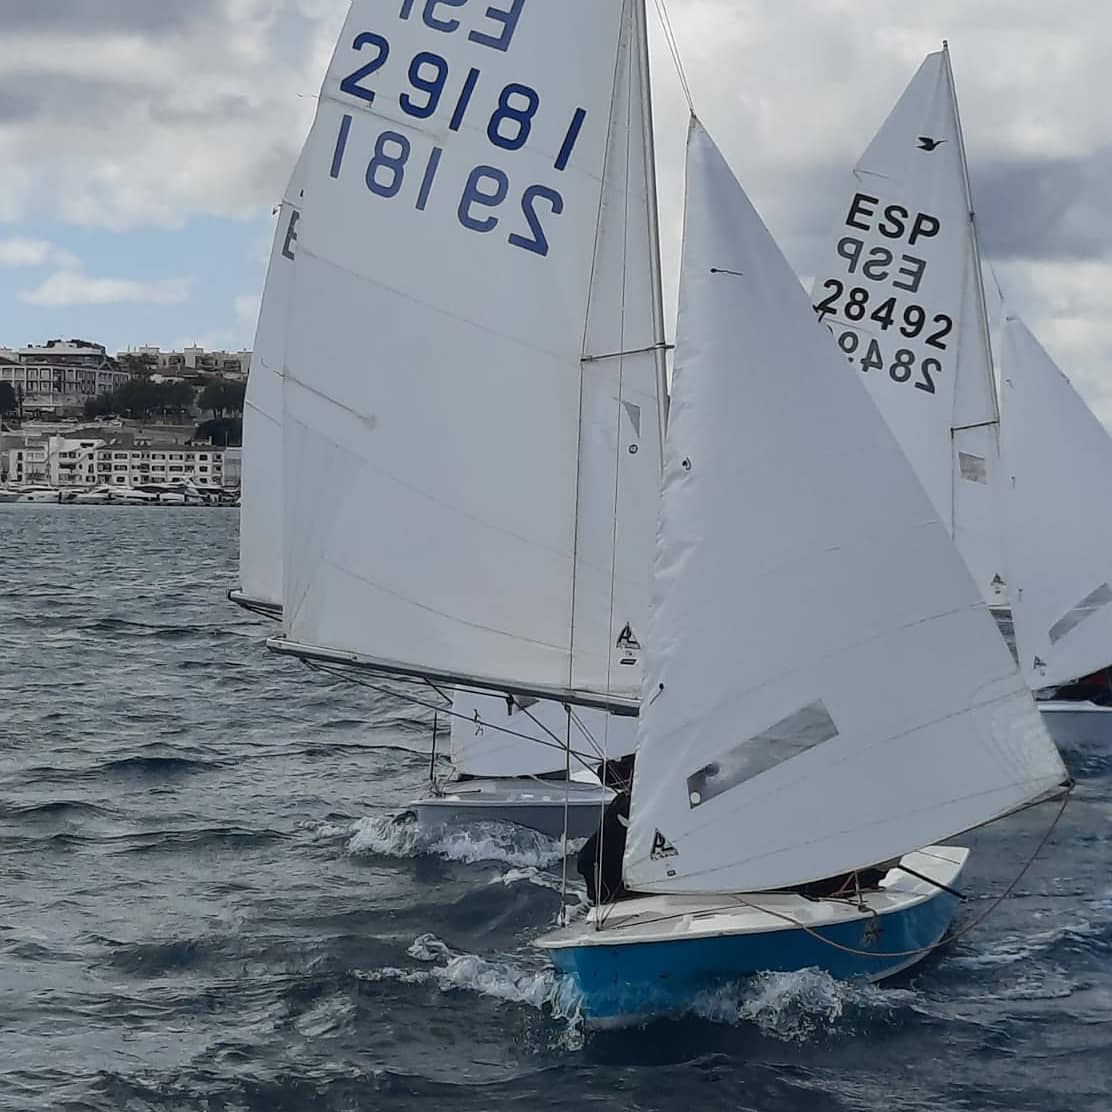 Campeonato de Menorca – Day 1 Image